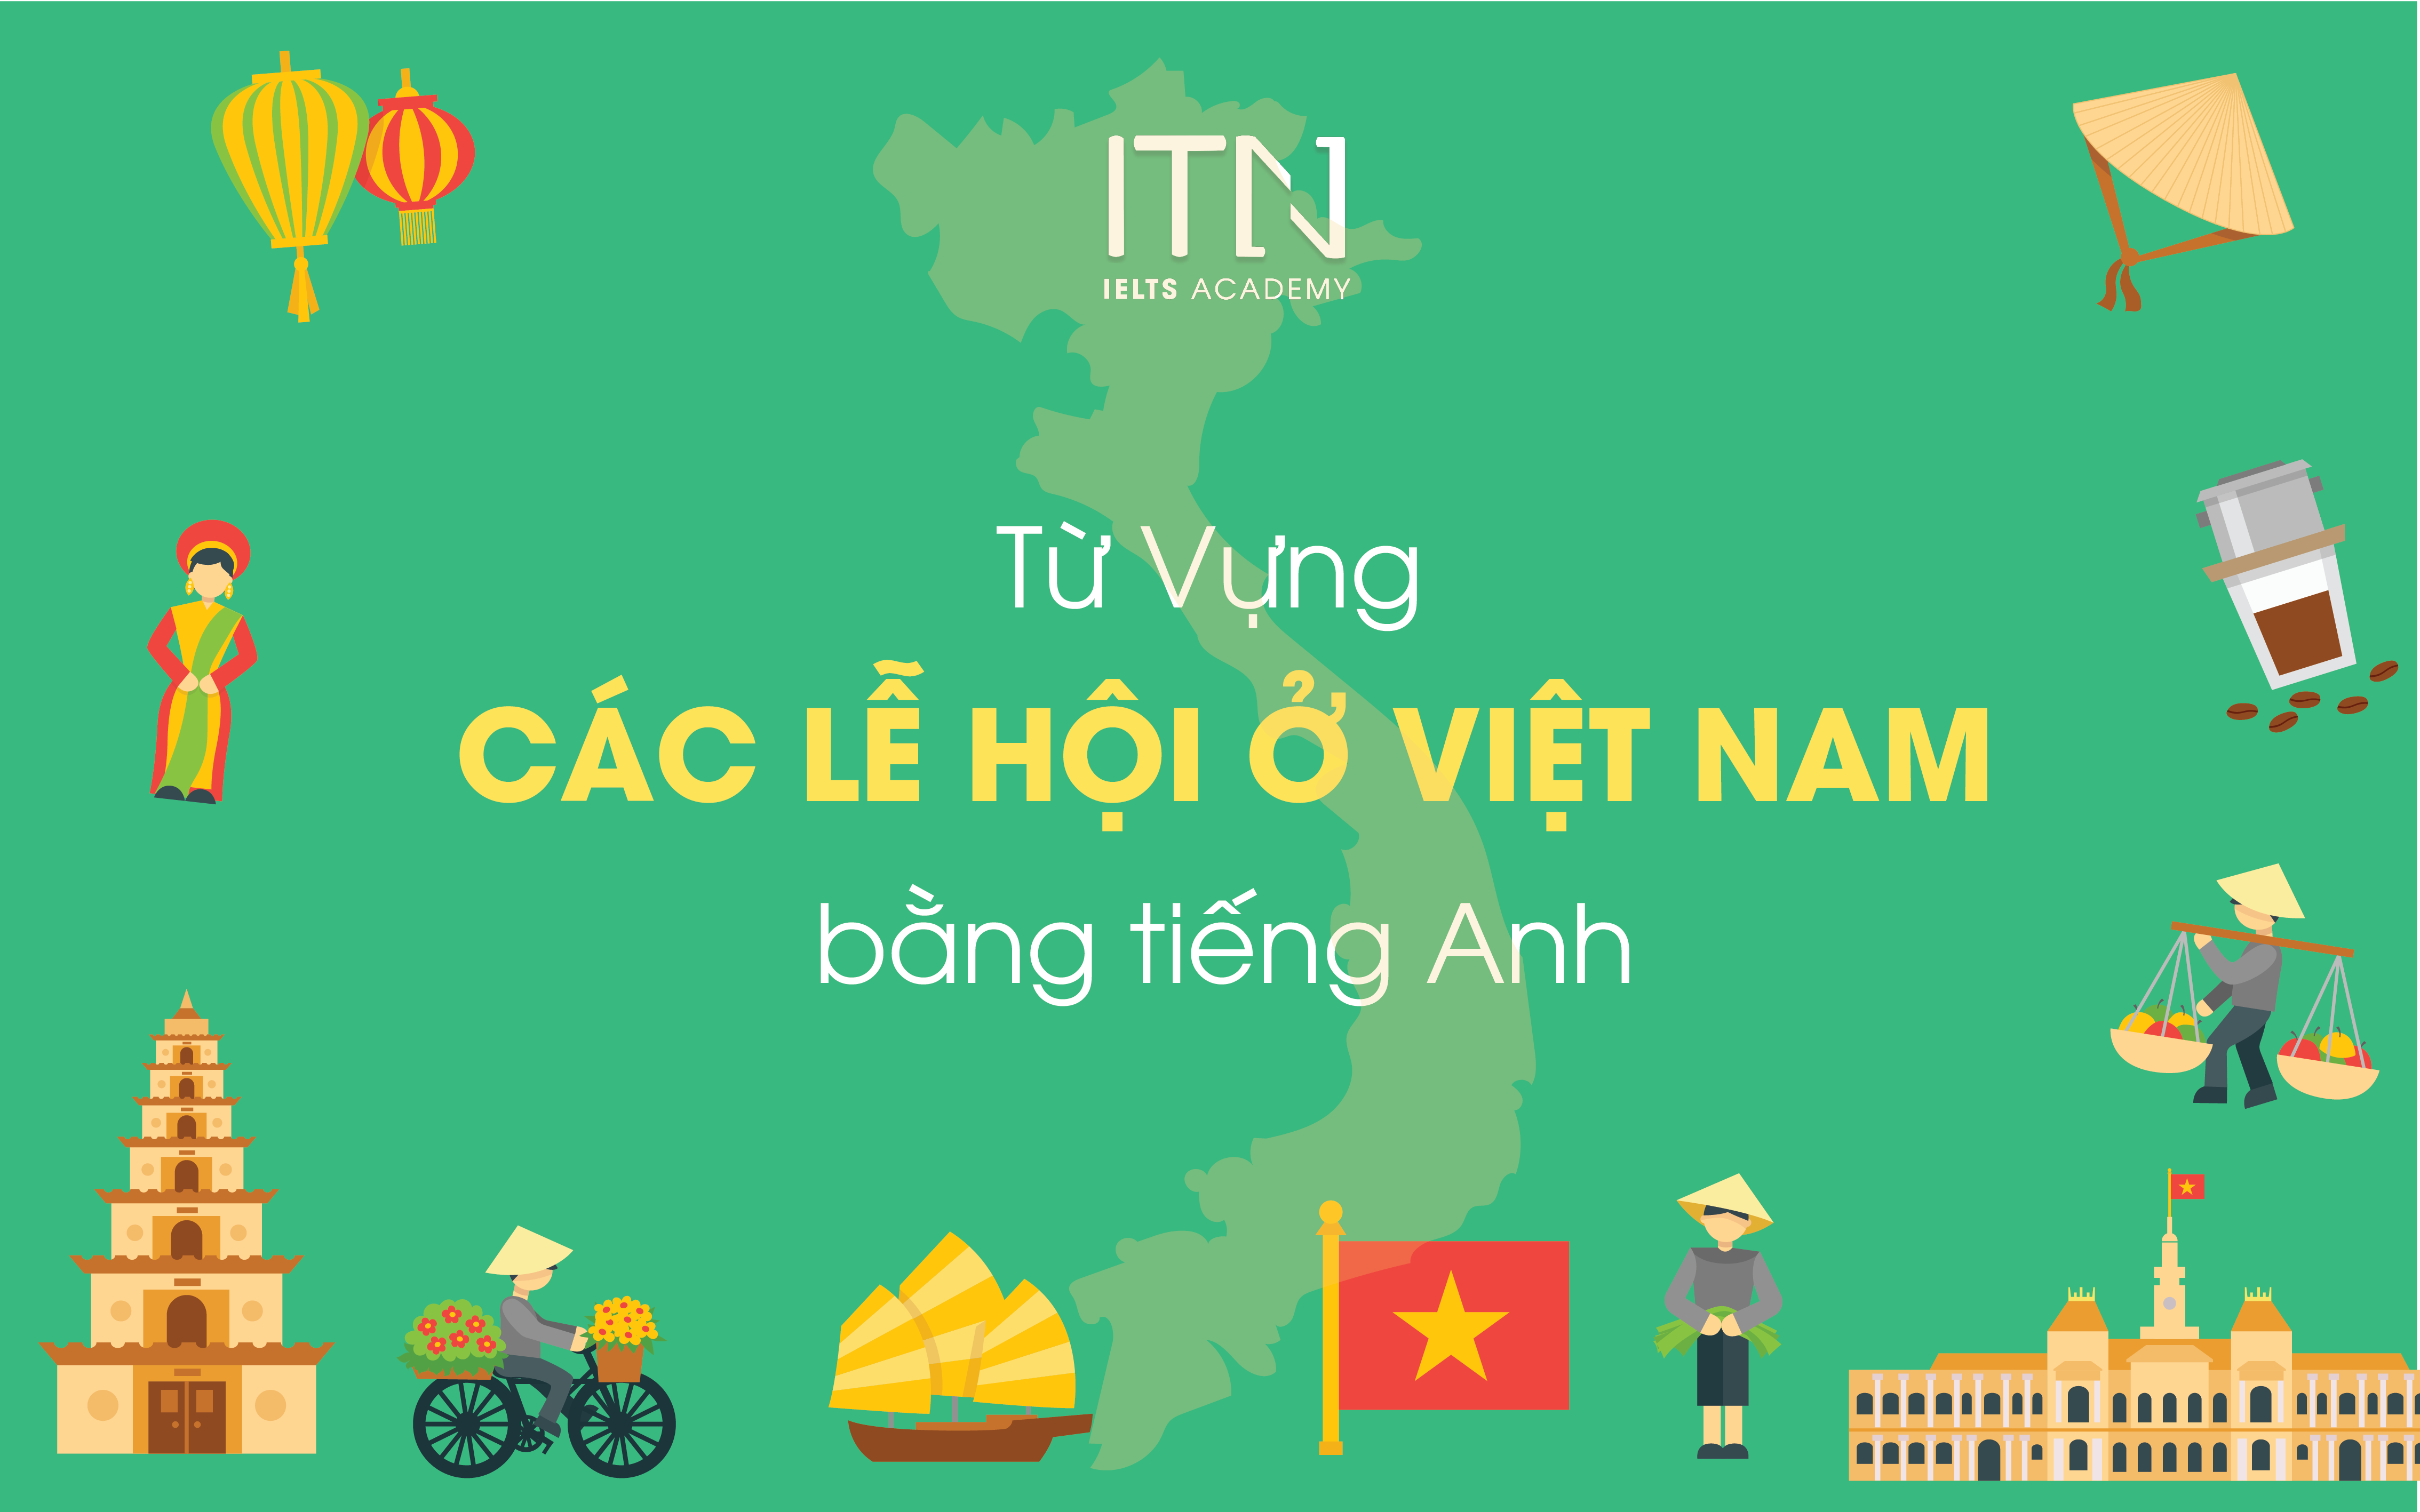 Từ Vựng Các Lễ Hội Ở Việt Nam Bằng Tiếng Anh